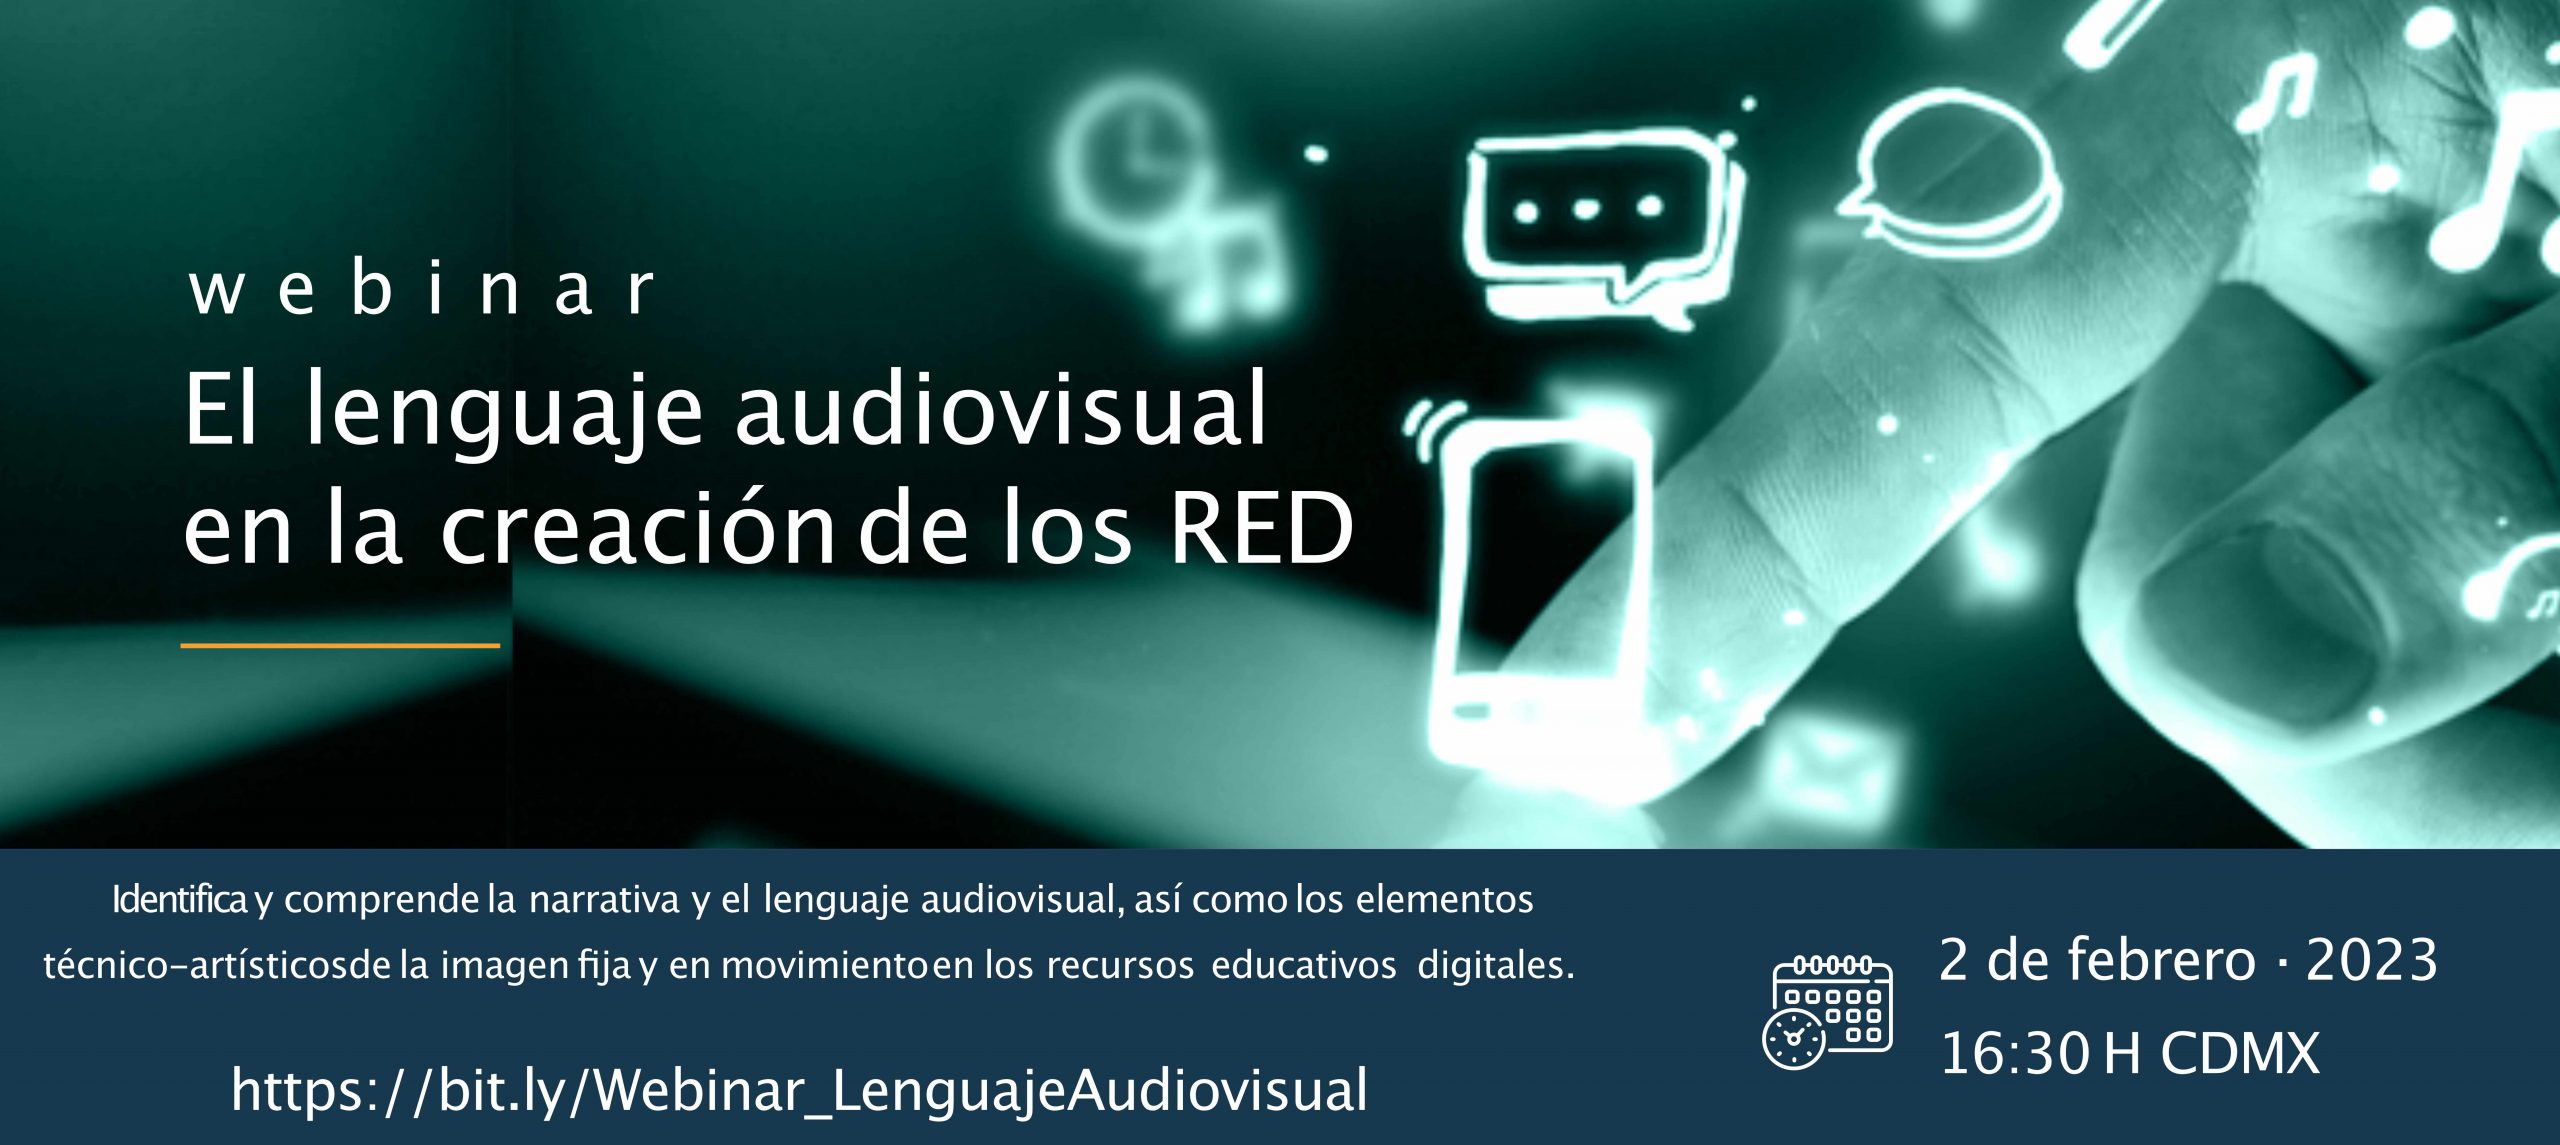 Webinar: el lenguaje audiovisual en la creación de los RED